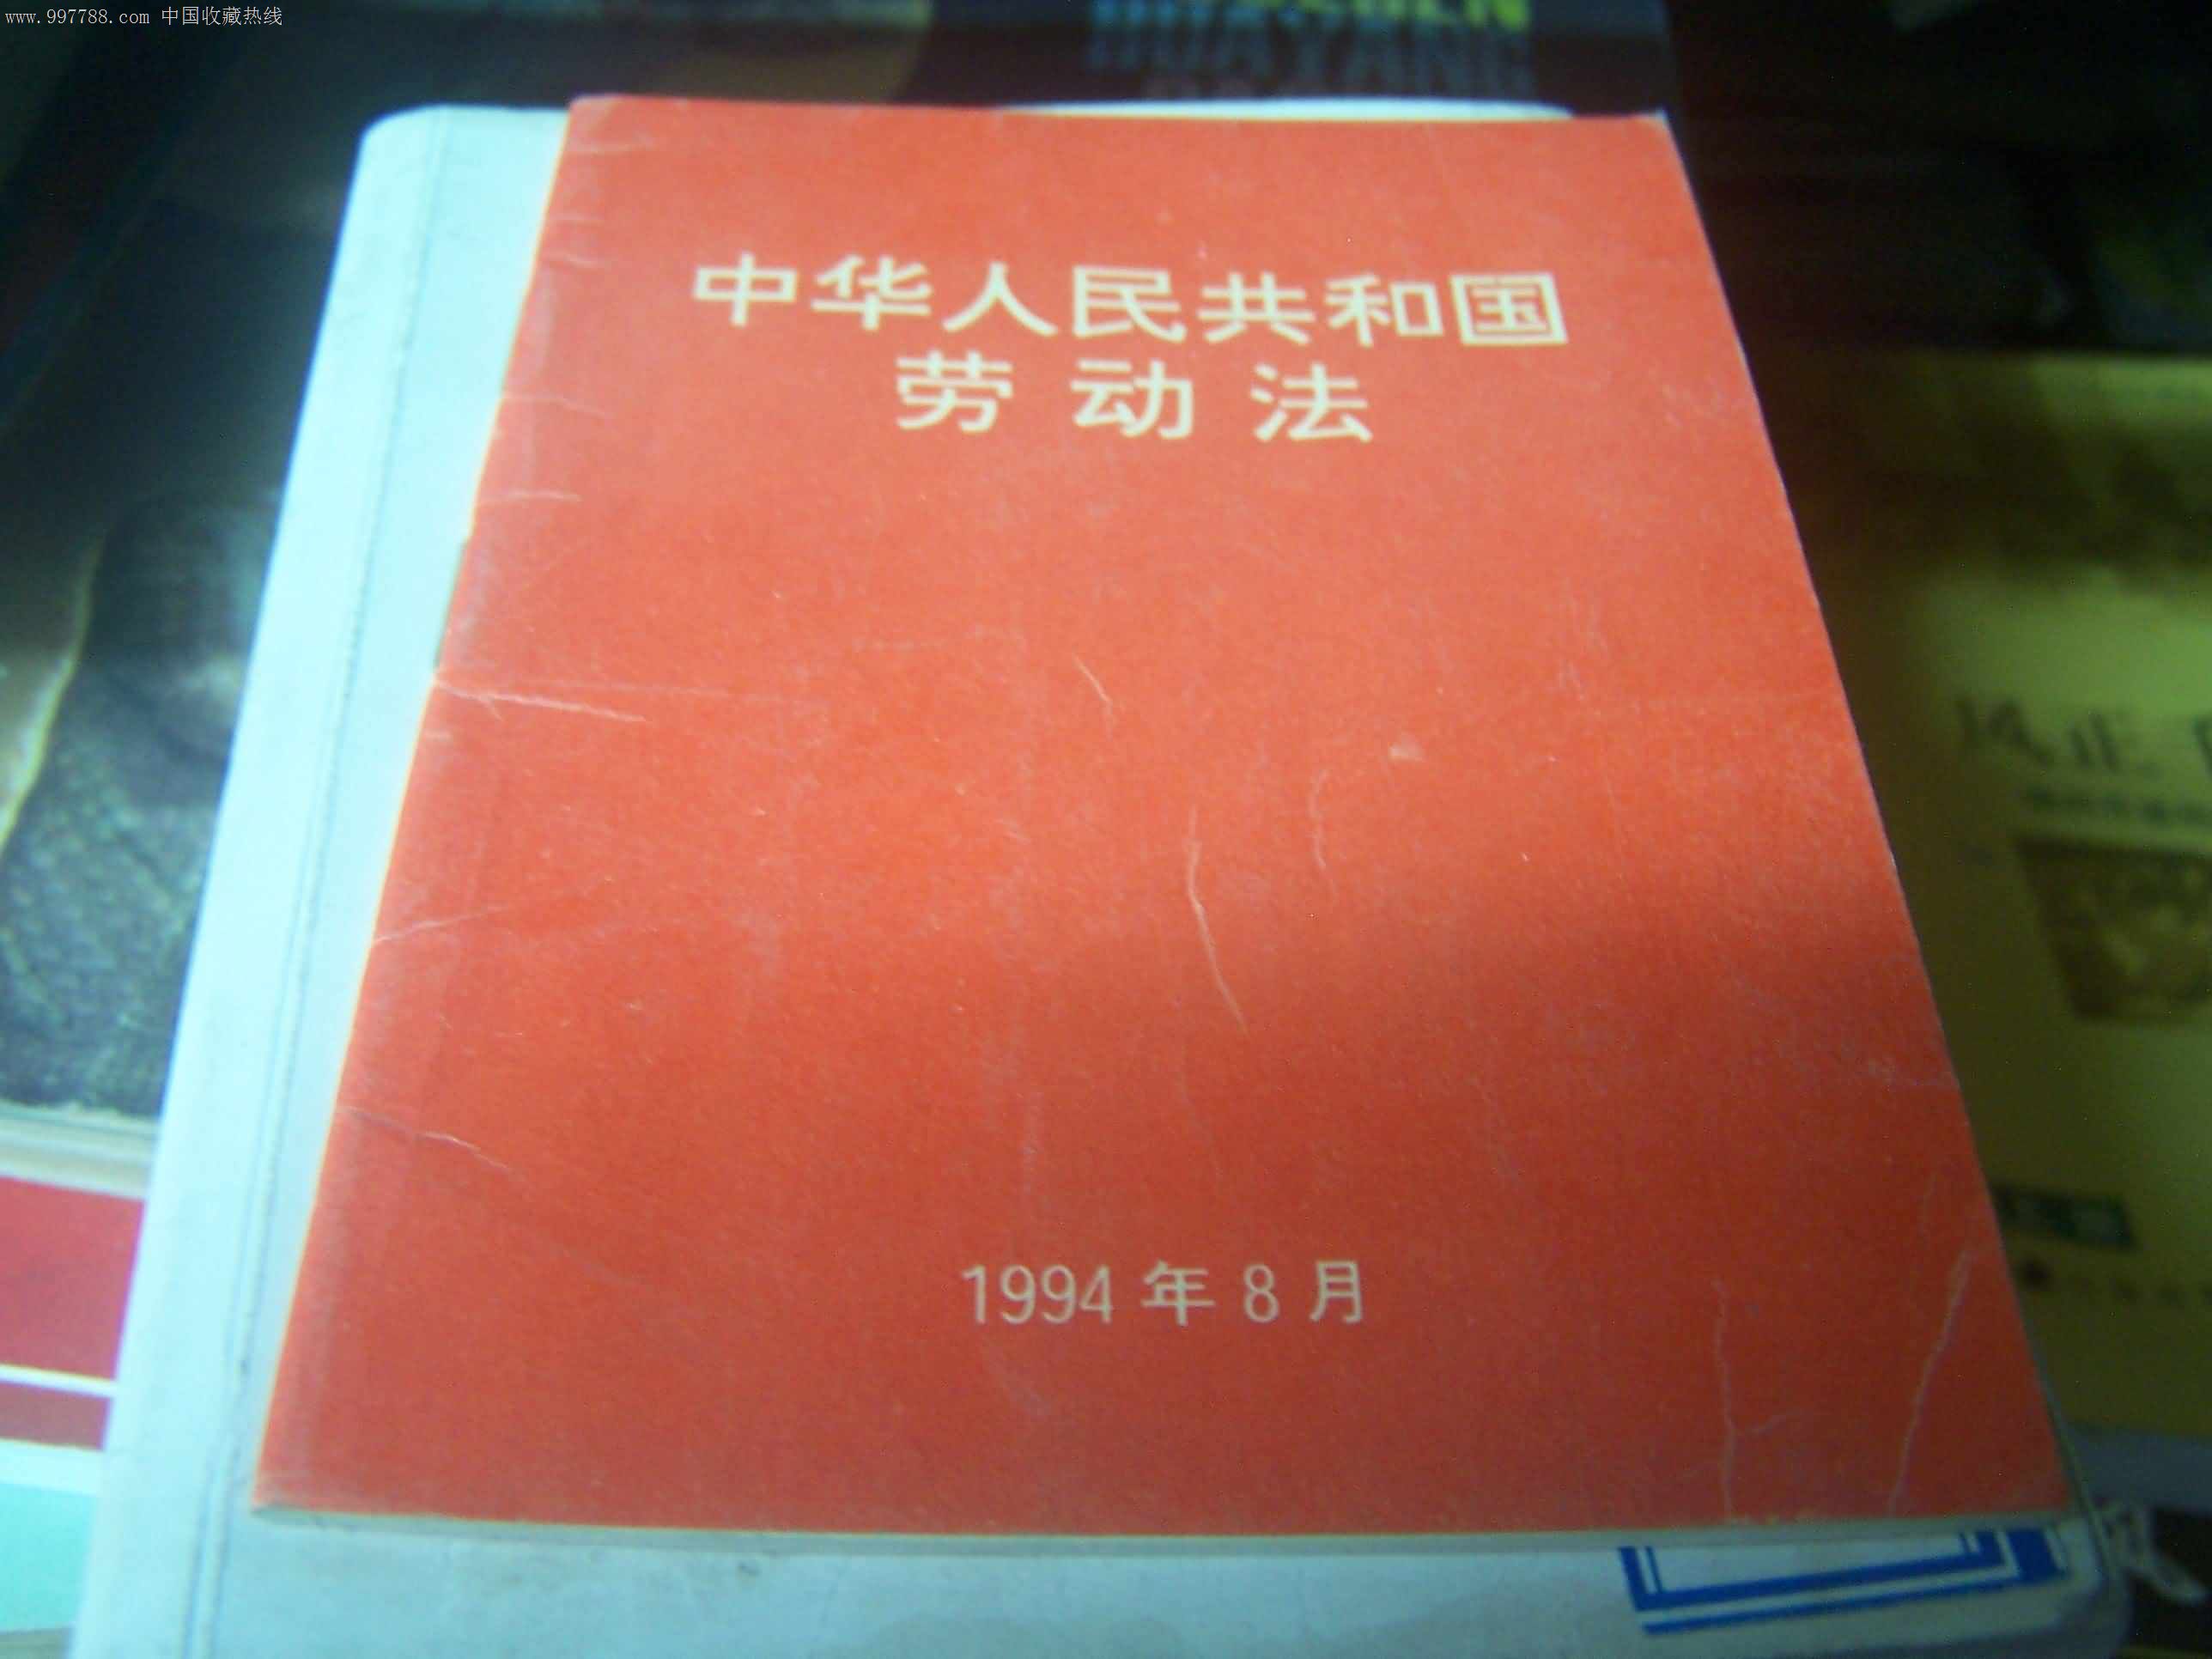 中华人民共和国劳动法(1994年),字典\/辞典,综合